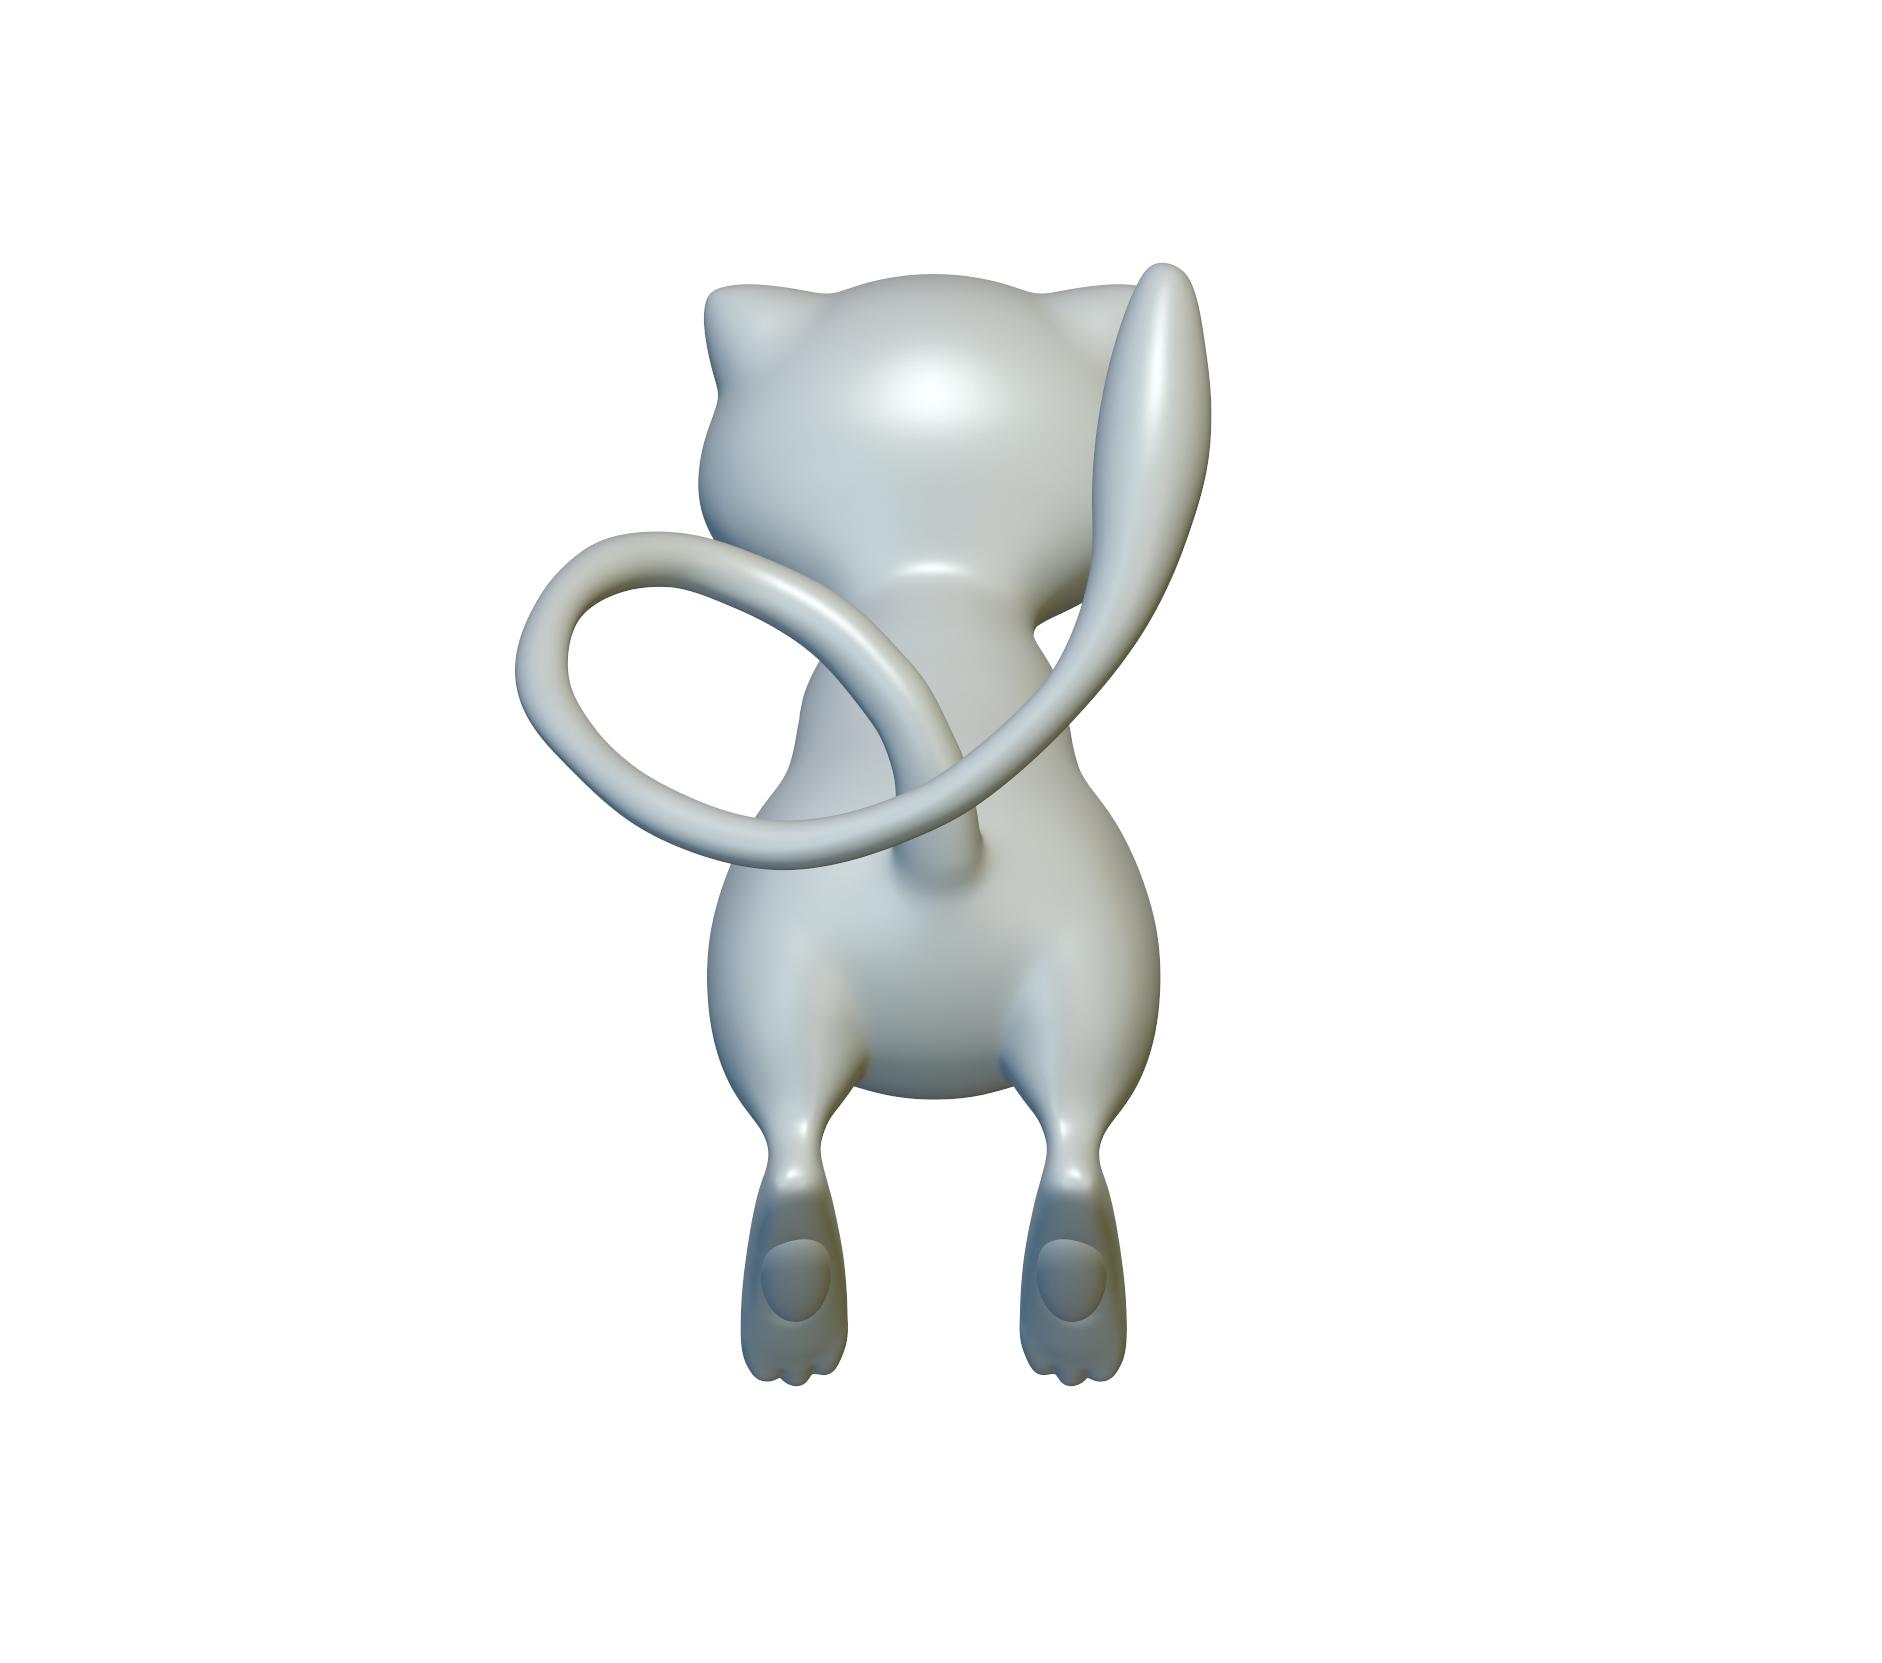 Pokemon Mew #151 - Optimized for 3D Printing 3d model